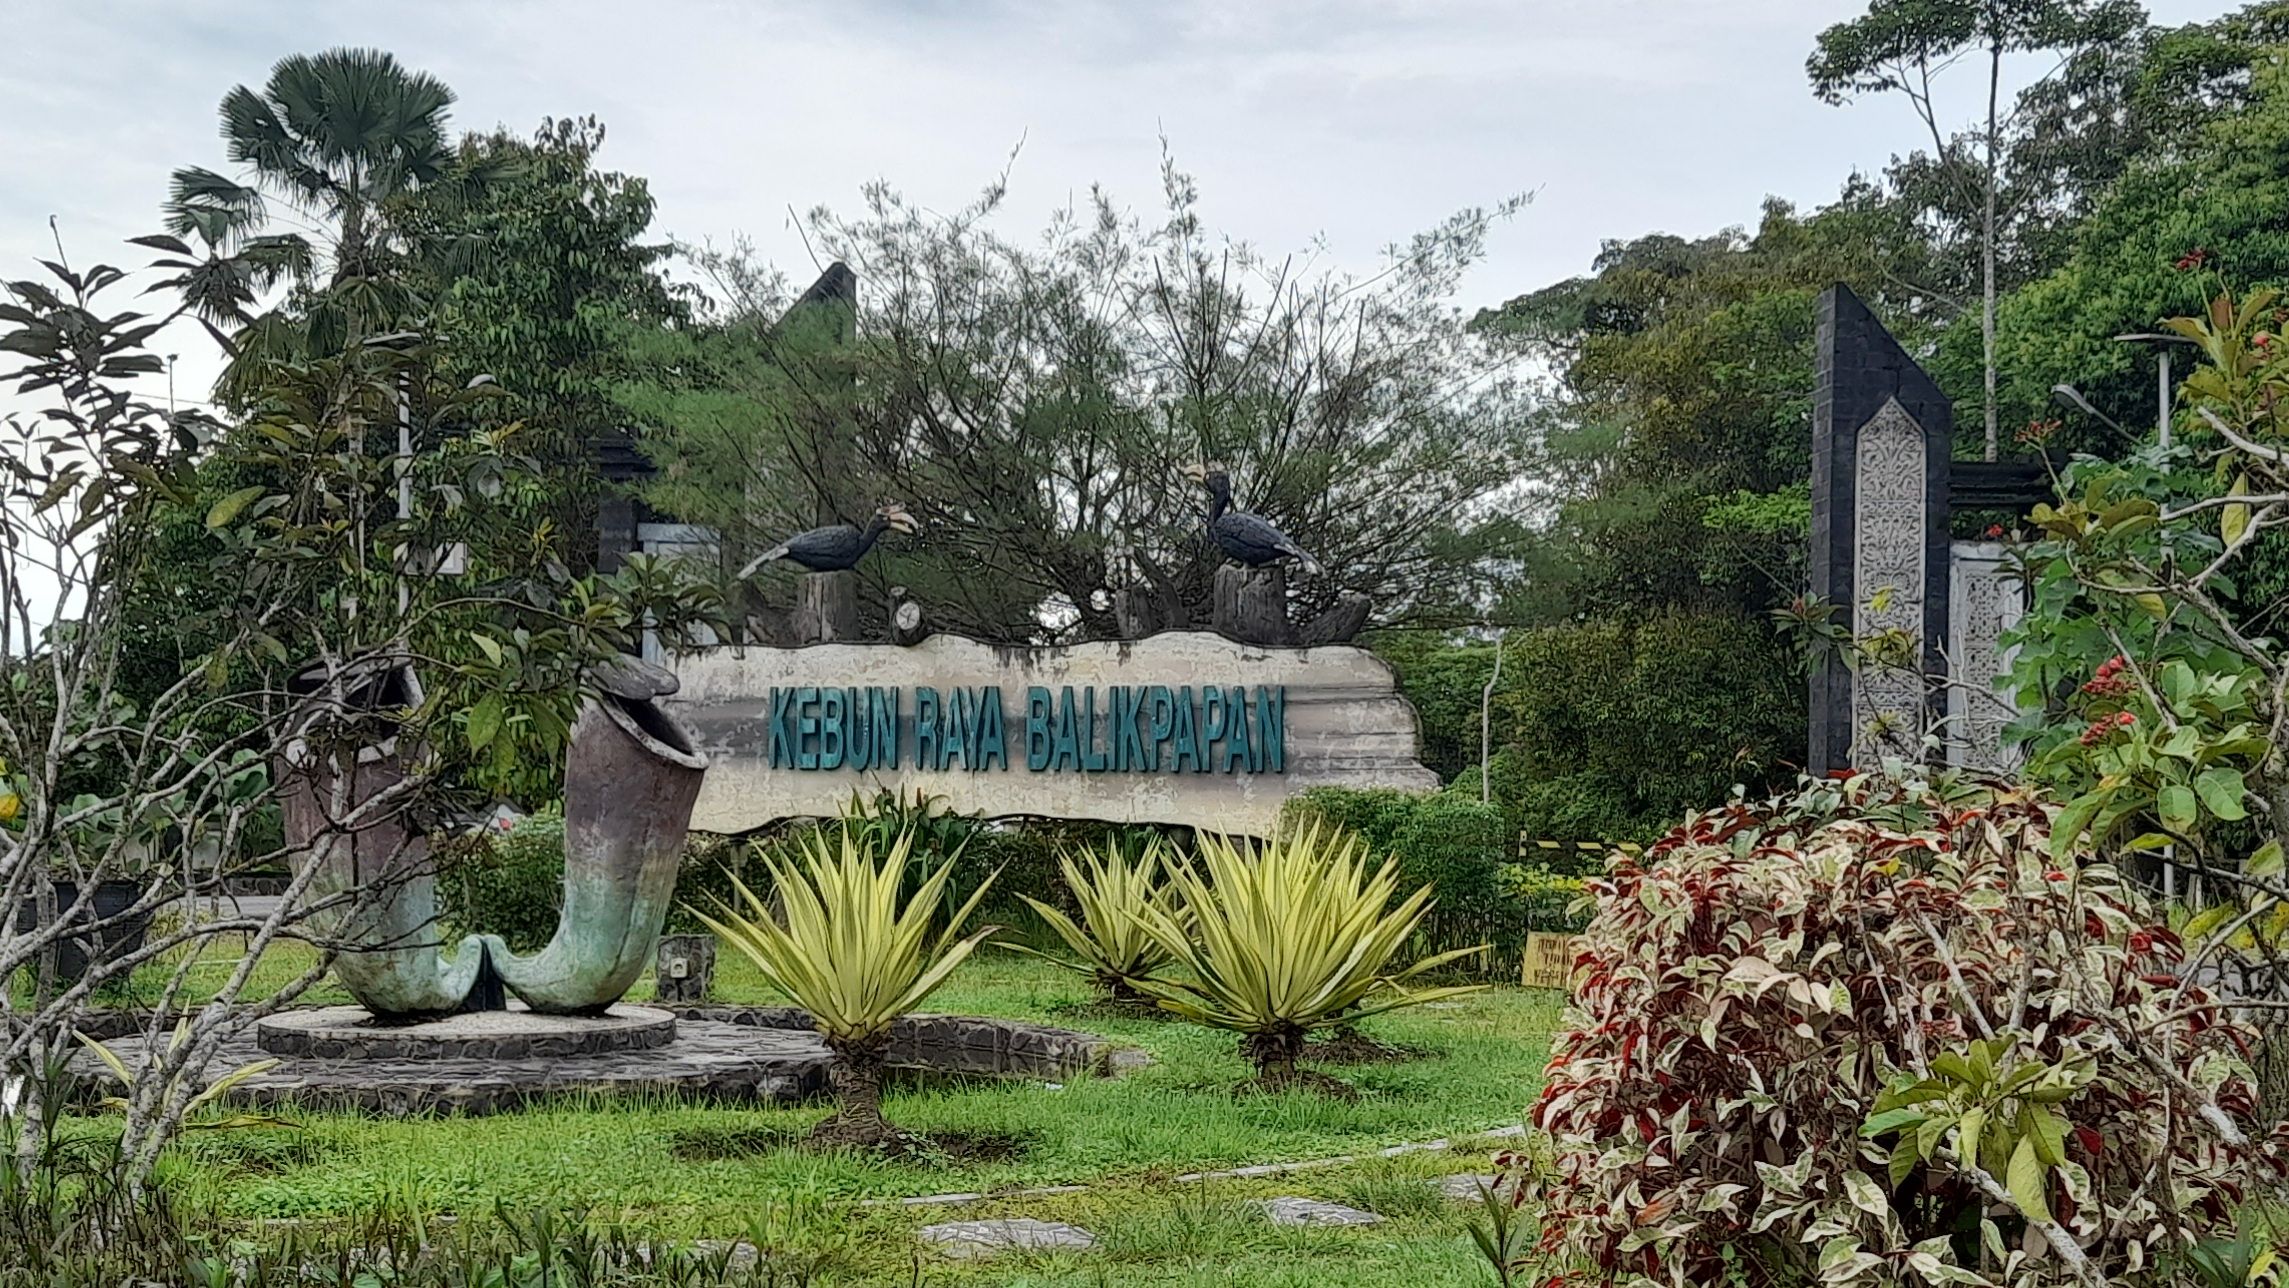 Kebun Raya Balikpapan, Menjelajahi Dan Belajar Di 5 Kebun Raya Yang Ada Di Indonesia